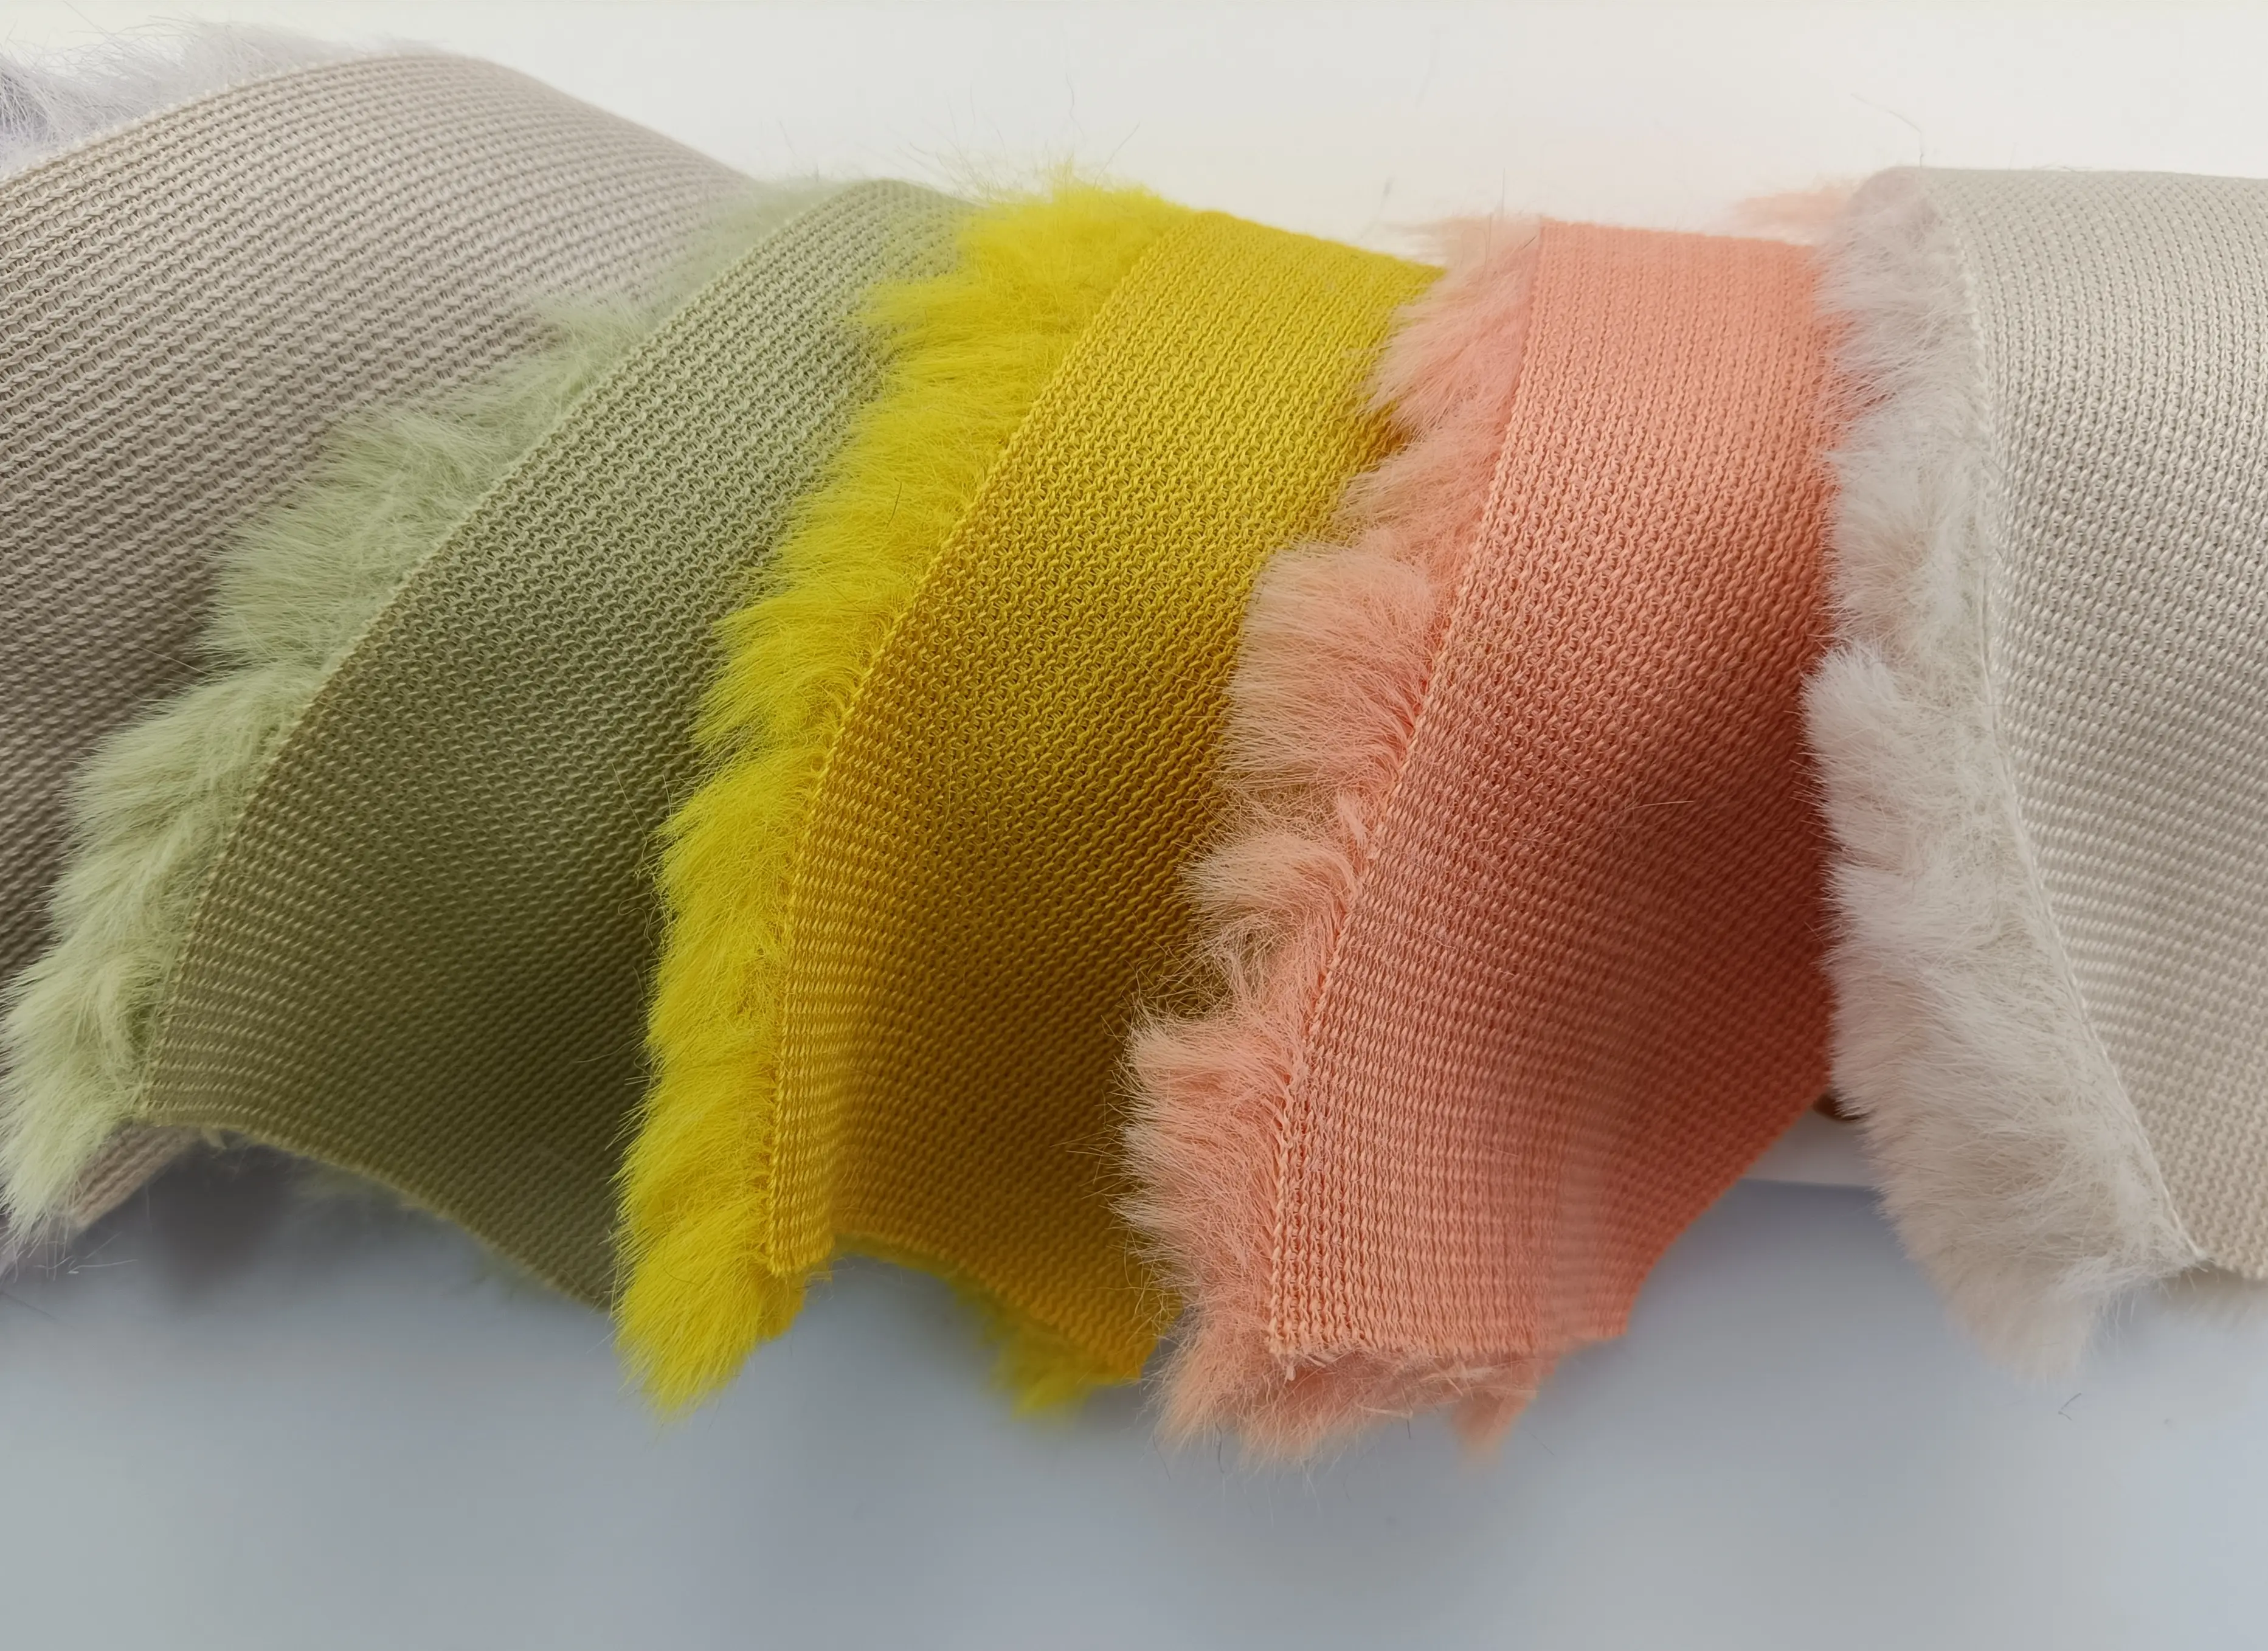 27 цветов Элегантный Подсолнух матовый кролик искусственный мех мягкая гладкая ткань для пальто/одеяла/сумки/игрушек